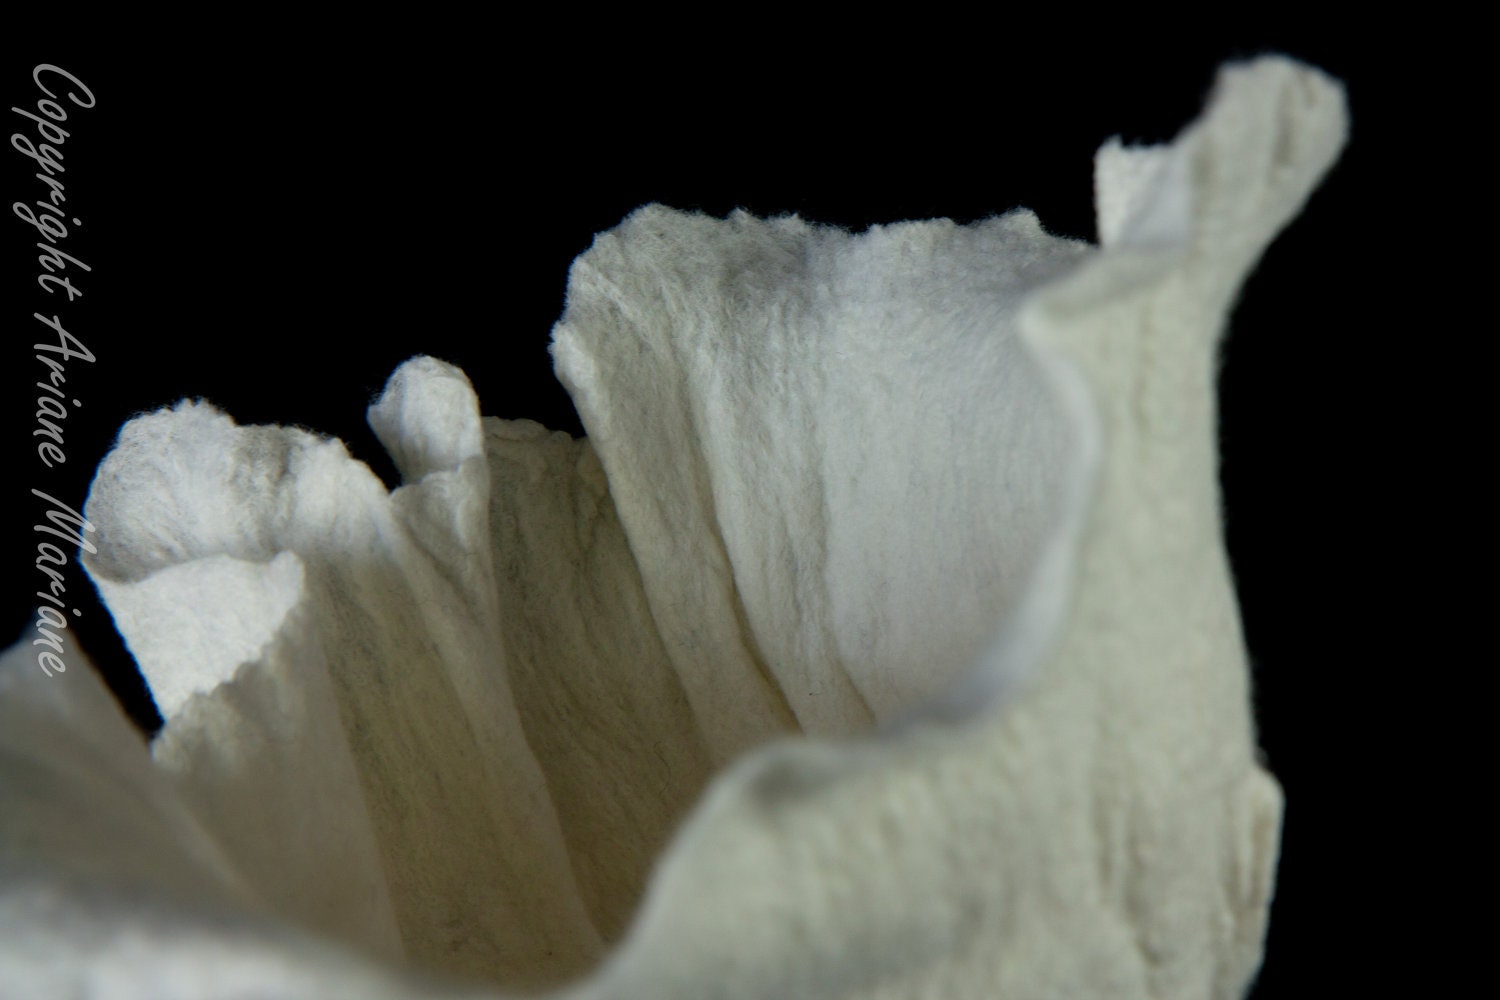 Elegant white fiber art sculpture / for flowers - ArianeMariane